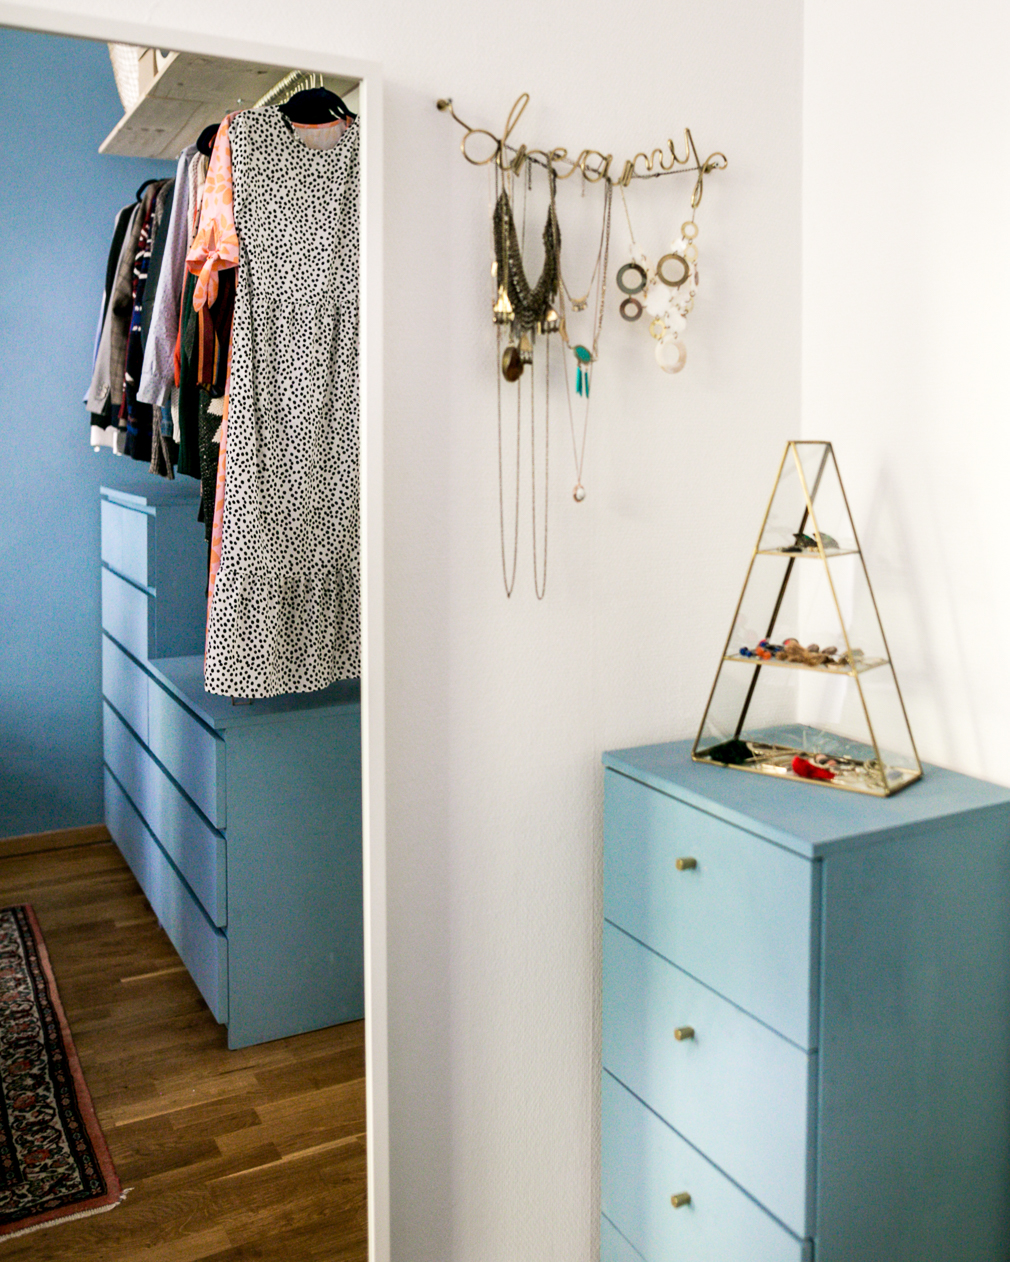 Minimalistischer Kleiderschrank – Unser DIY Upcycling Kleiderschrank aus IKEA Malm Kommoden